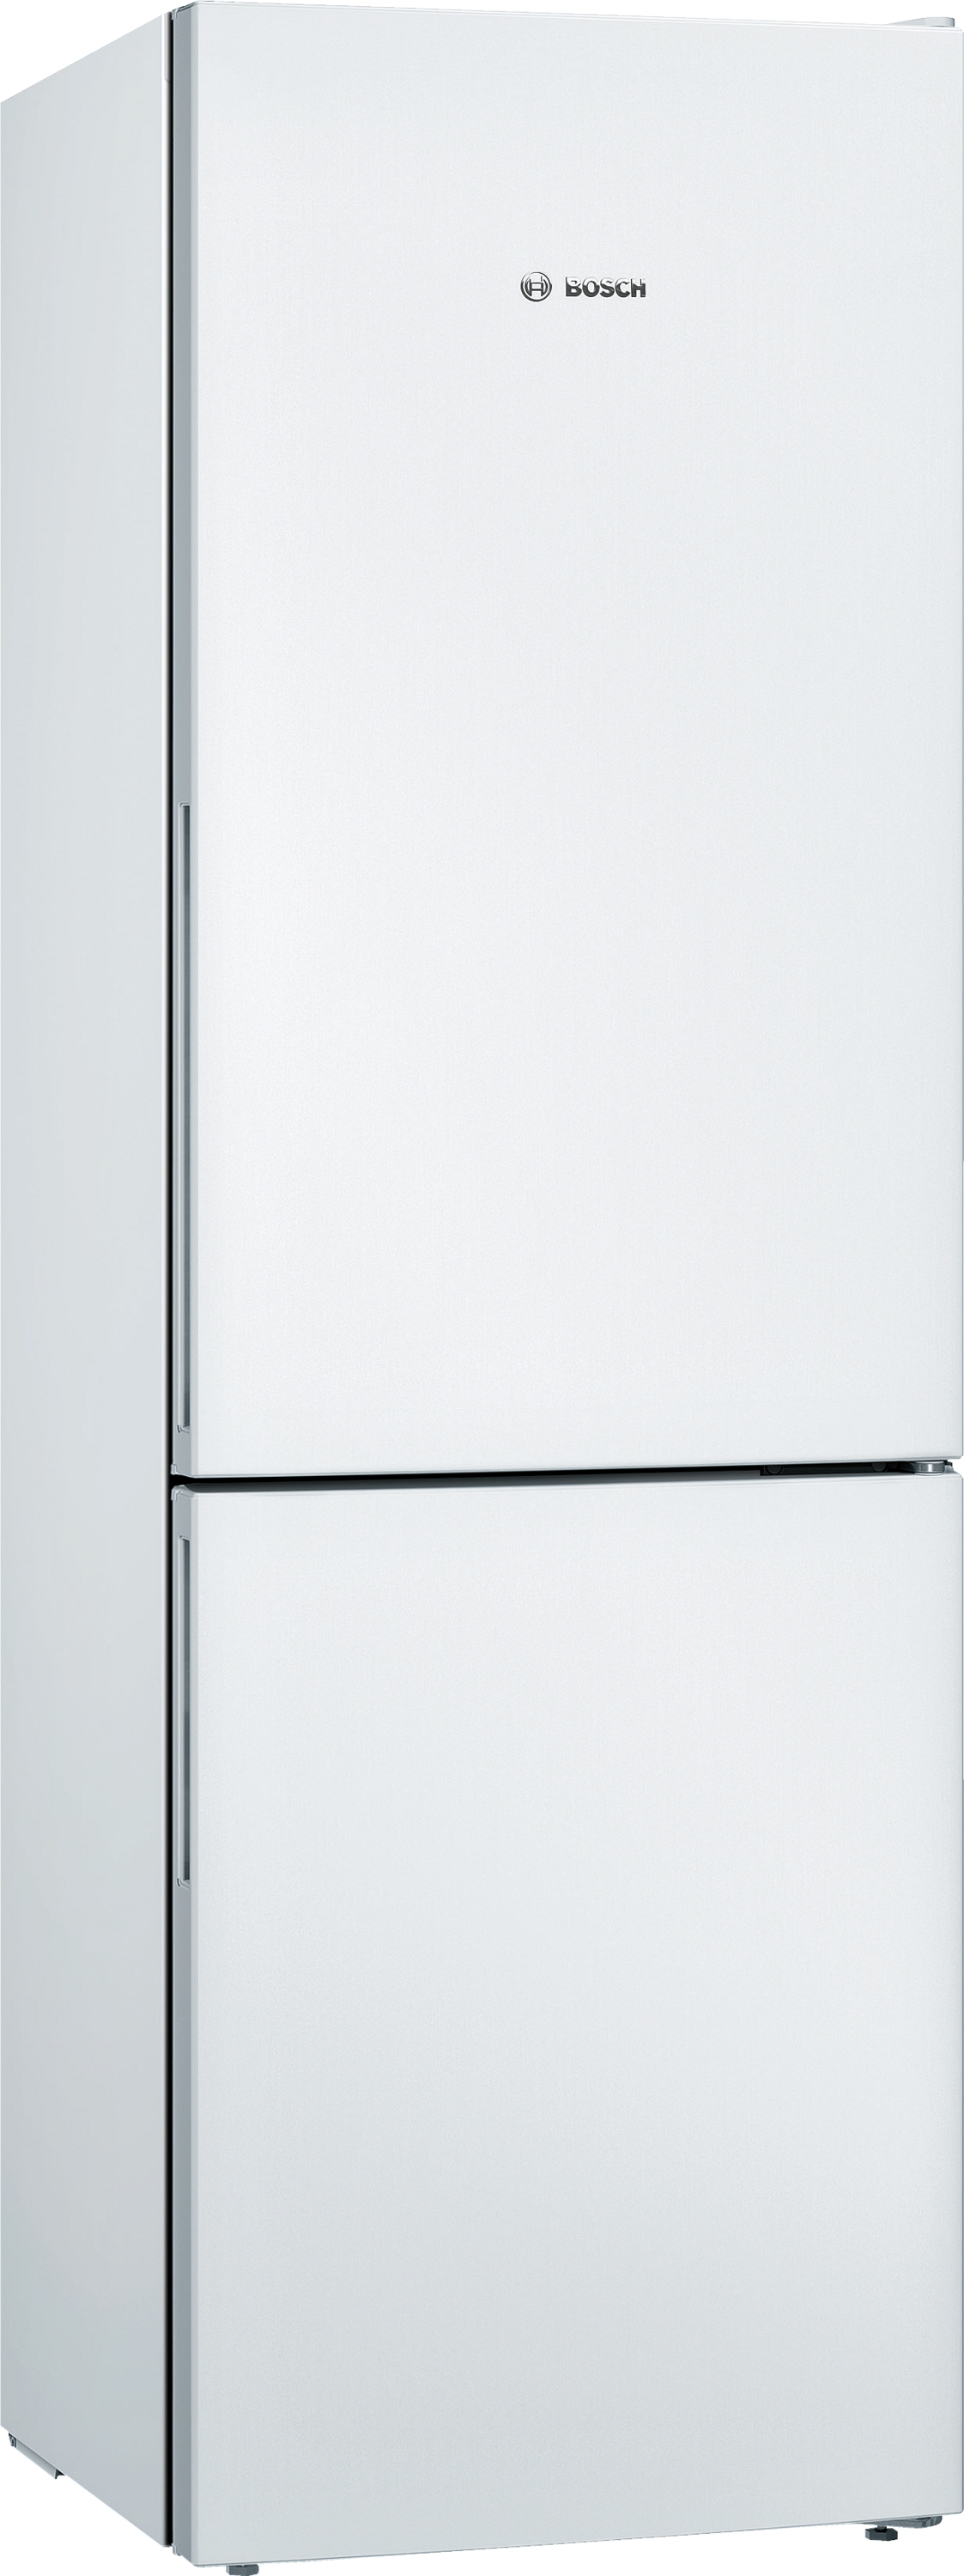 KGV36VWEA, Samostojeći frižider sa zamrzivačem dole